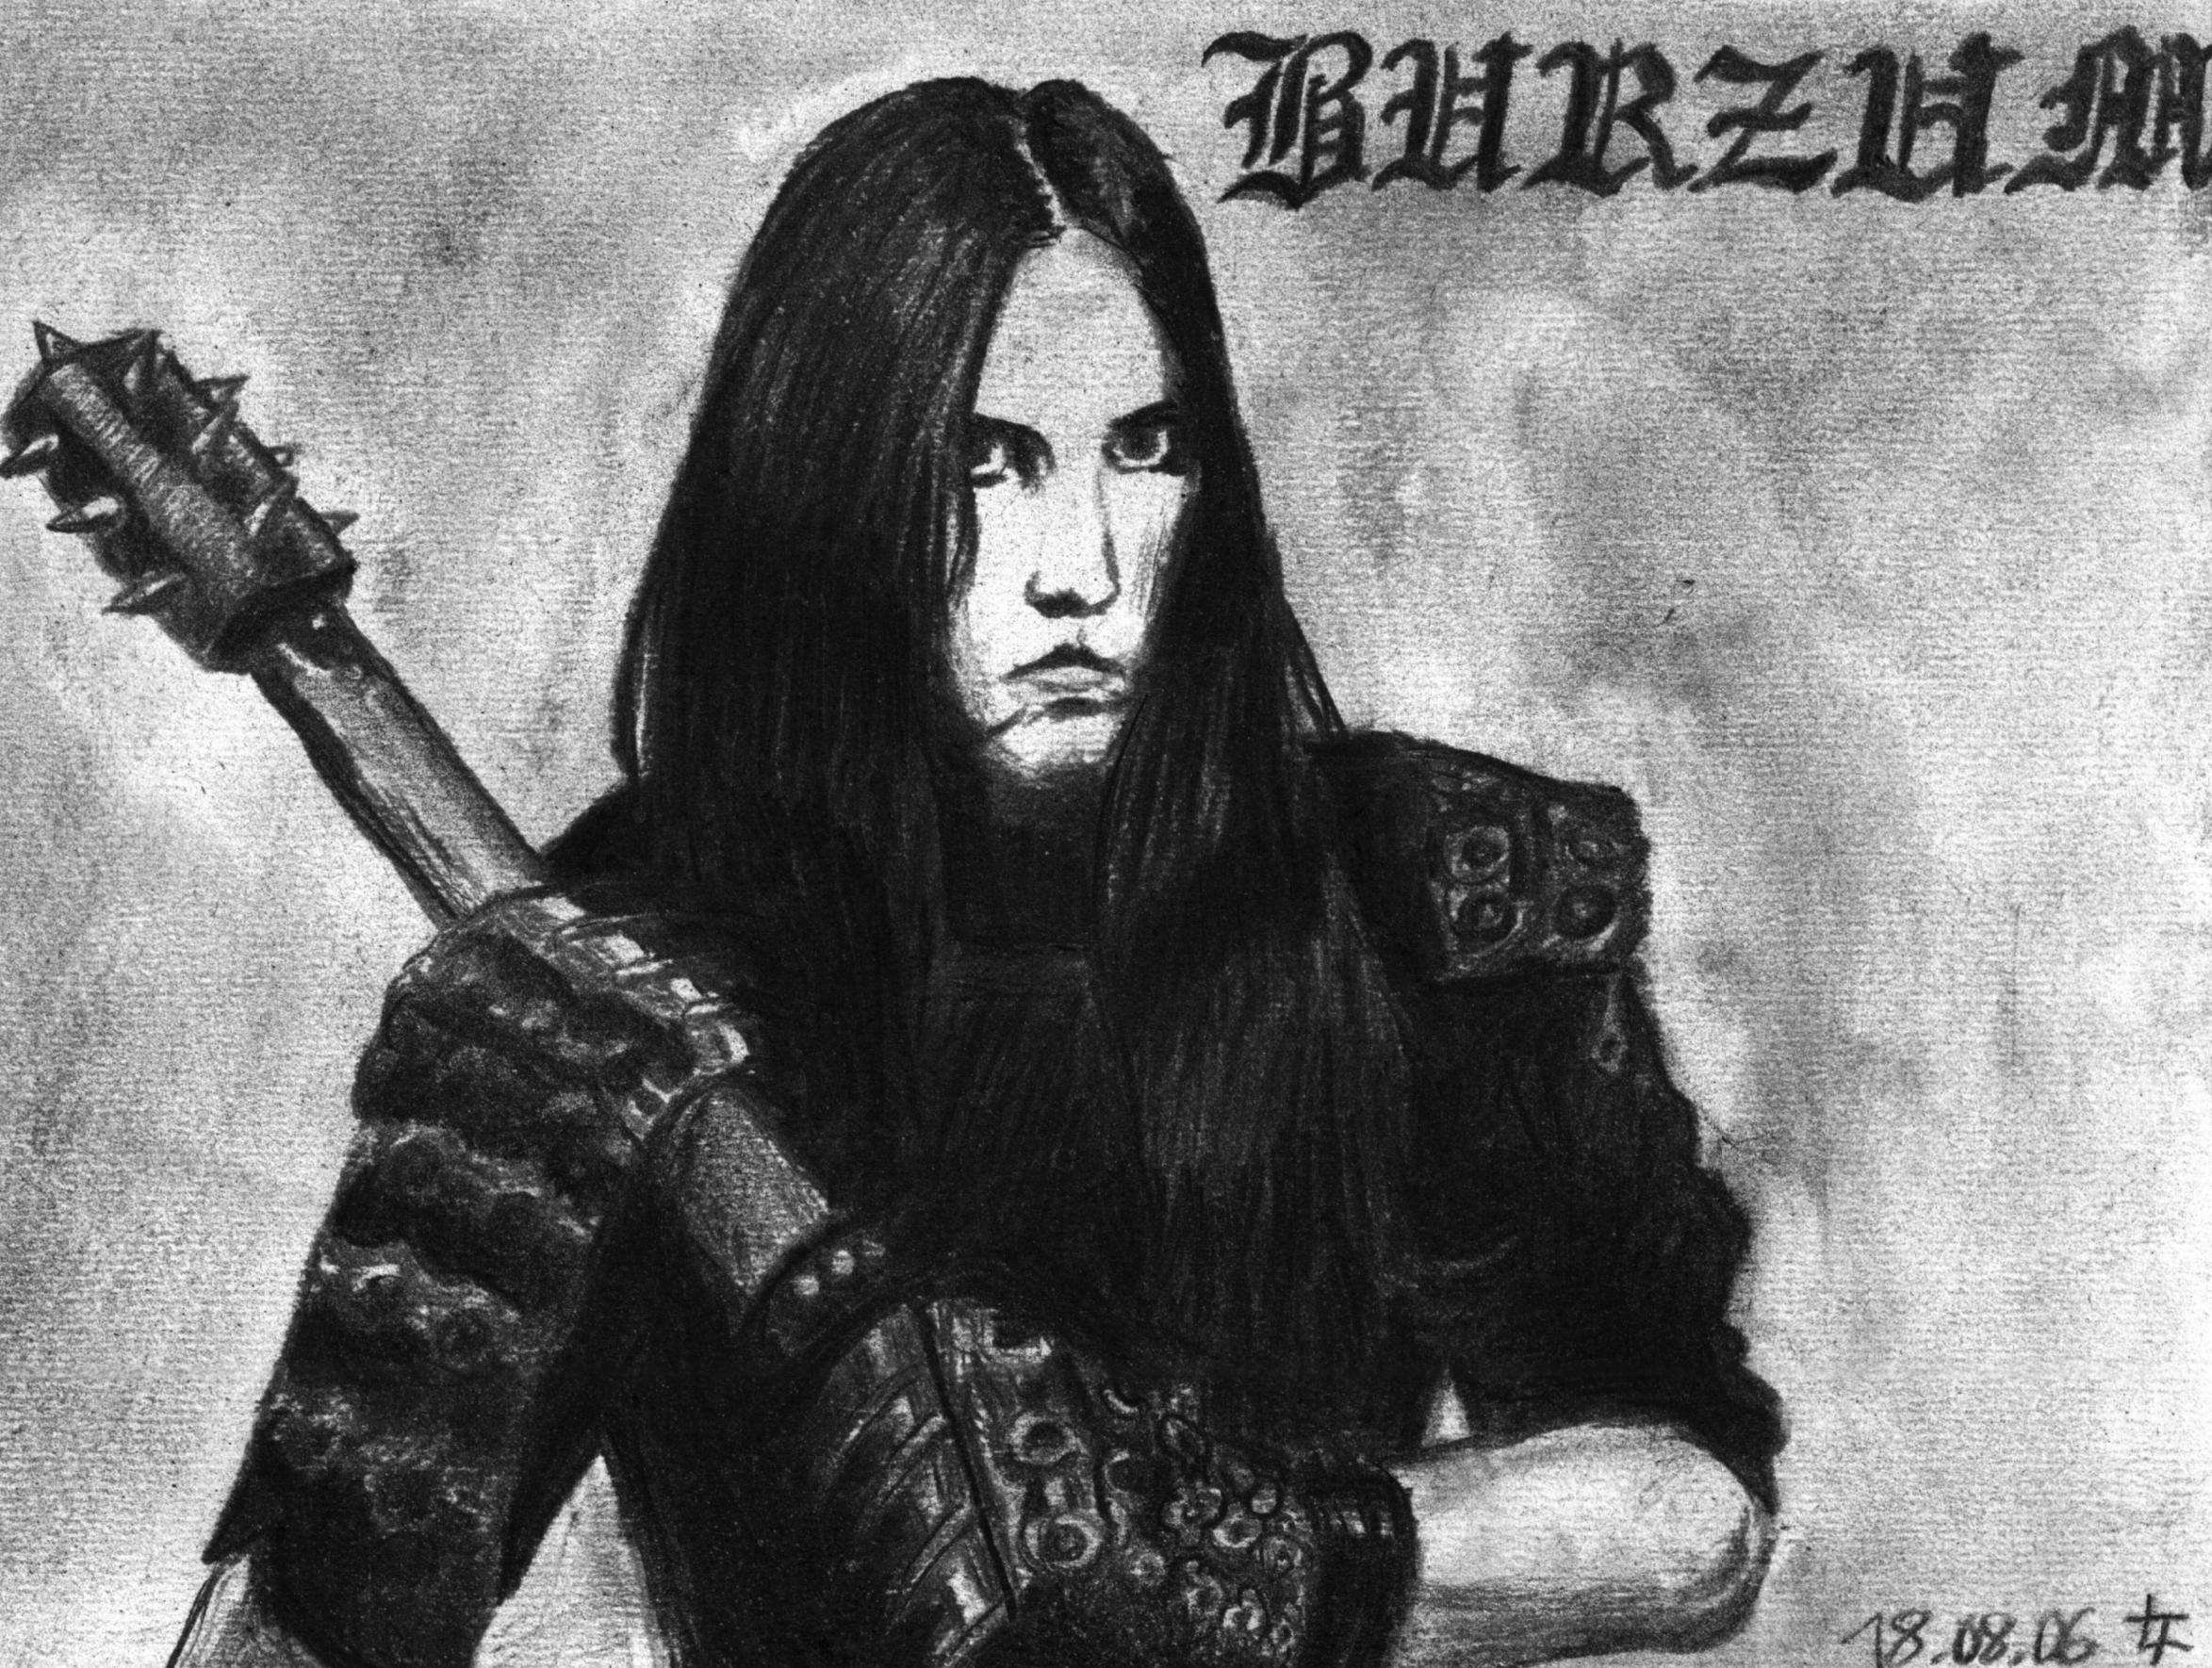 Burzum, Varg Vikernes